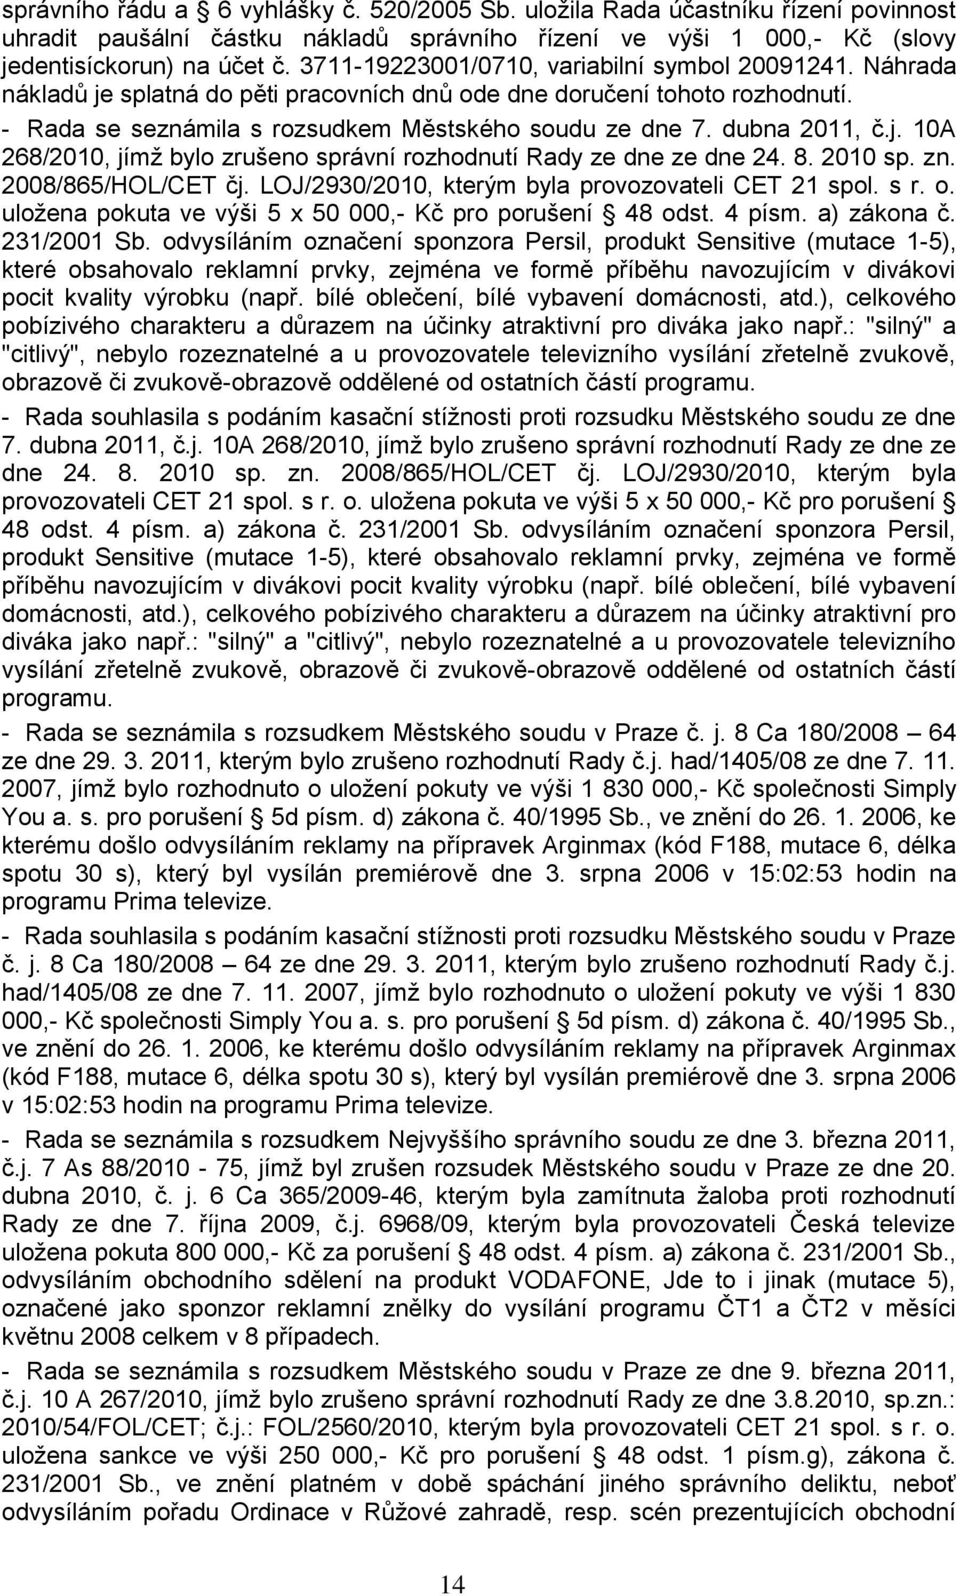 dubna 2011, č.j. 10A 268/2010, jímţ bylo zrušeno správní rozhodnutí Rady ze dne ze dne 24. 8. 2010 sp. zn. 2008/865/HOL/CET čj. LOJ/2930/2010, kterým byla provozovateli CET 21 spol. s r. o.